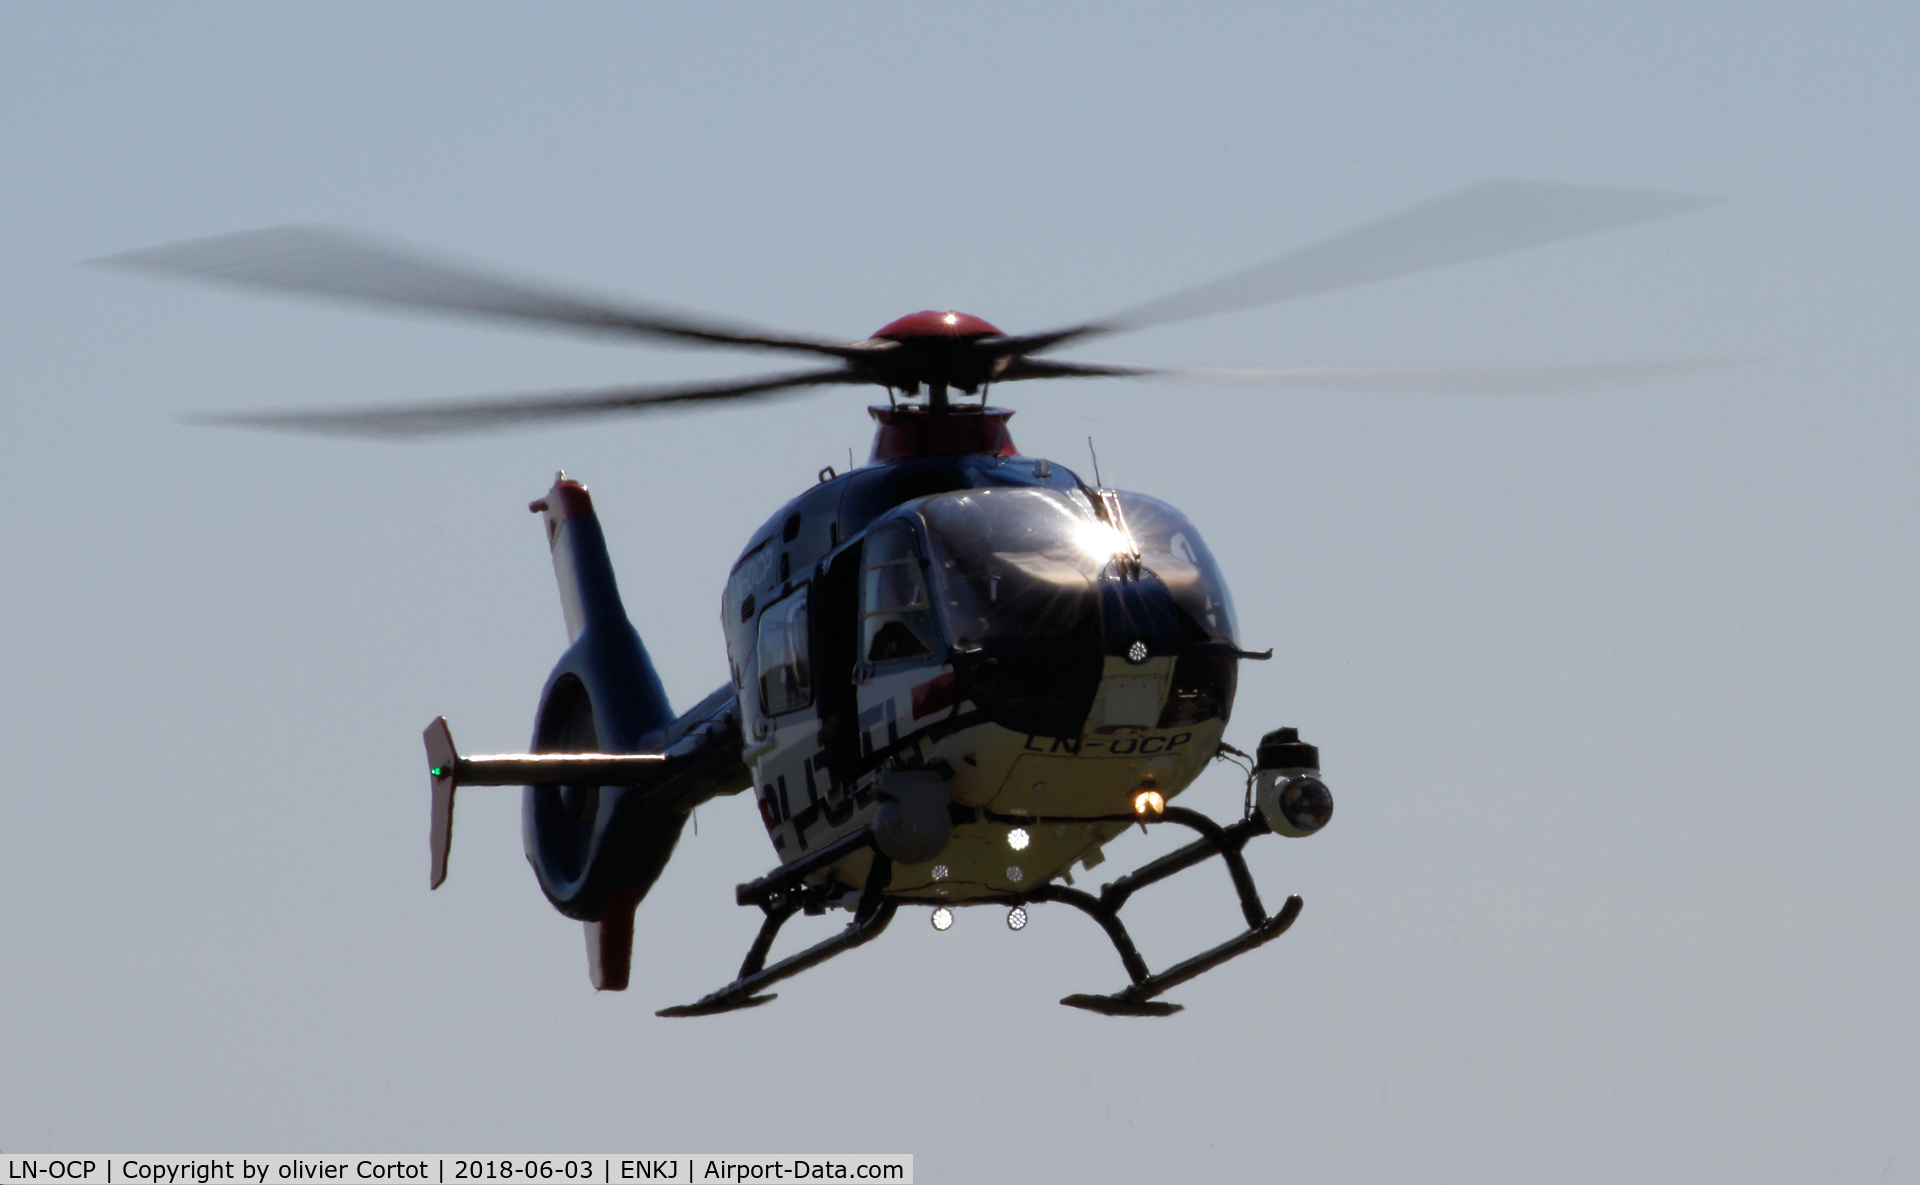 LN-OCP, 2003 Eurocopter EC-135T-2 C/N 0279, landing at kjeller airfield